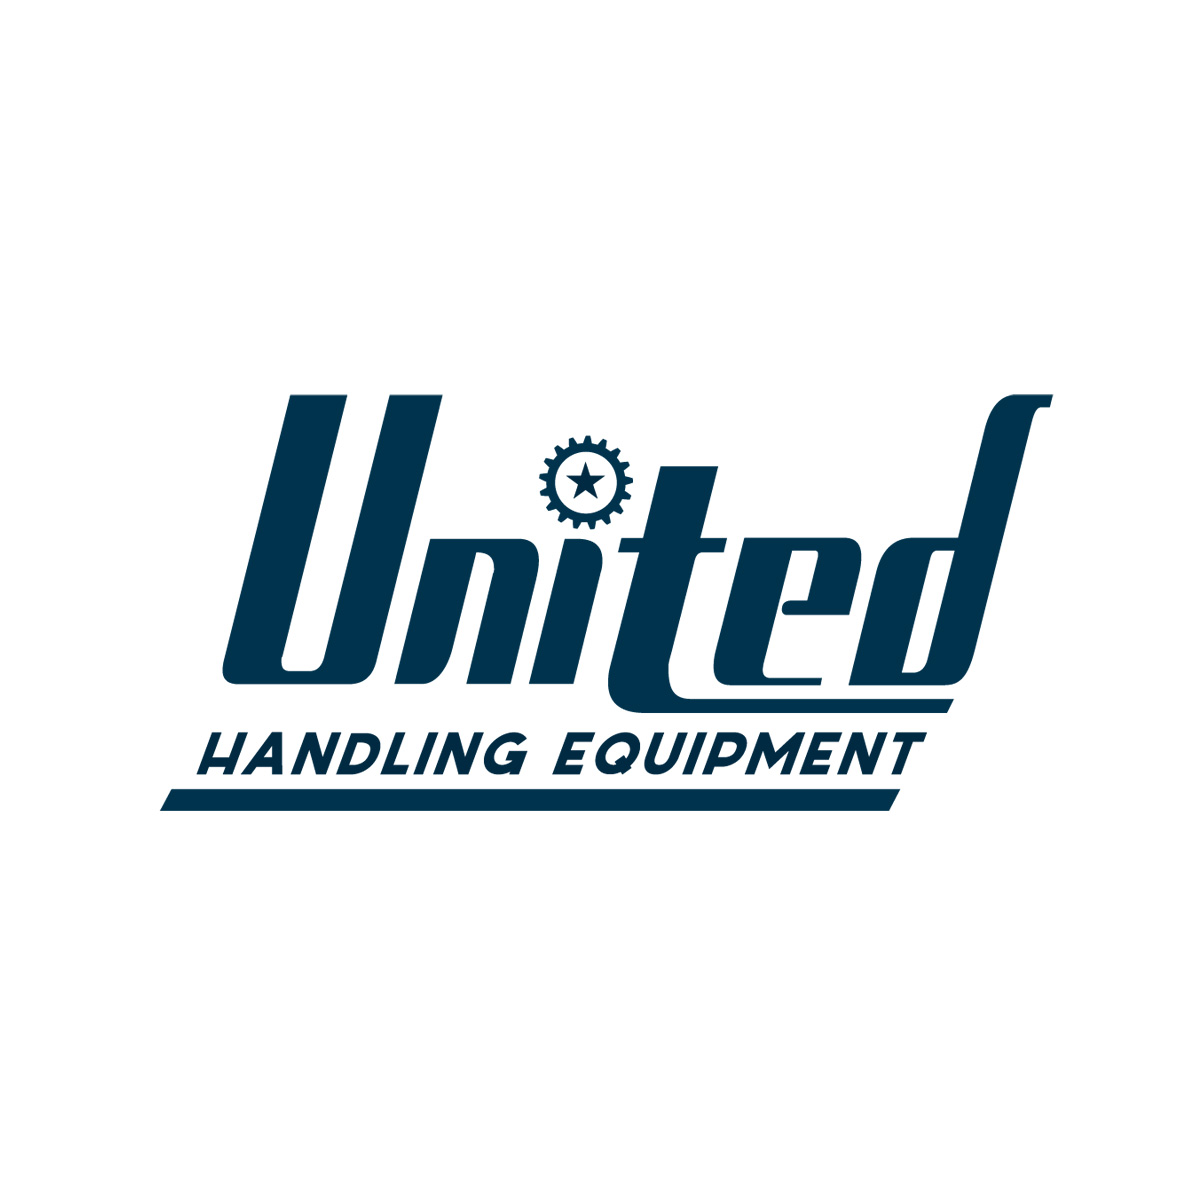 united handling equipment typeographic logo namemark